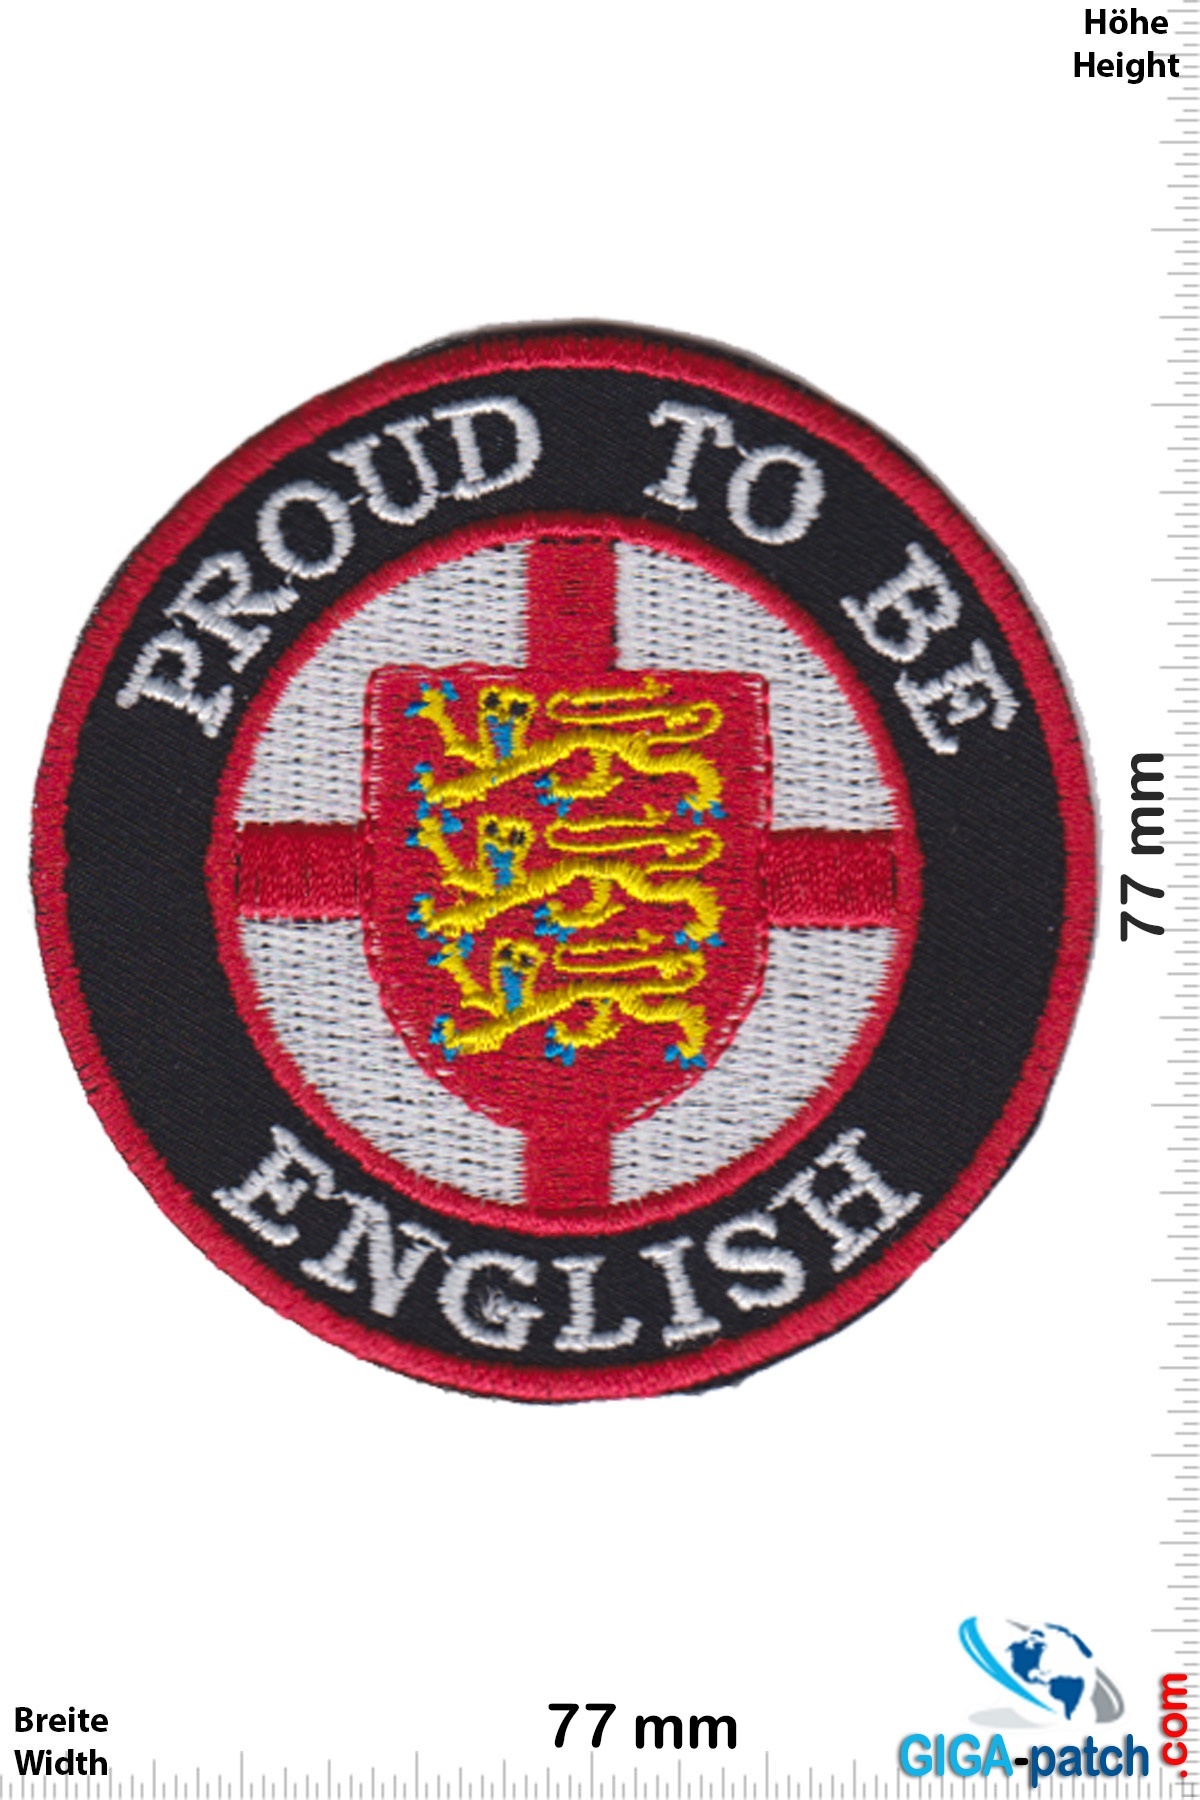 England, England Proud to be English  - UK